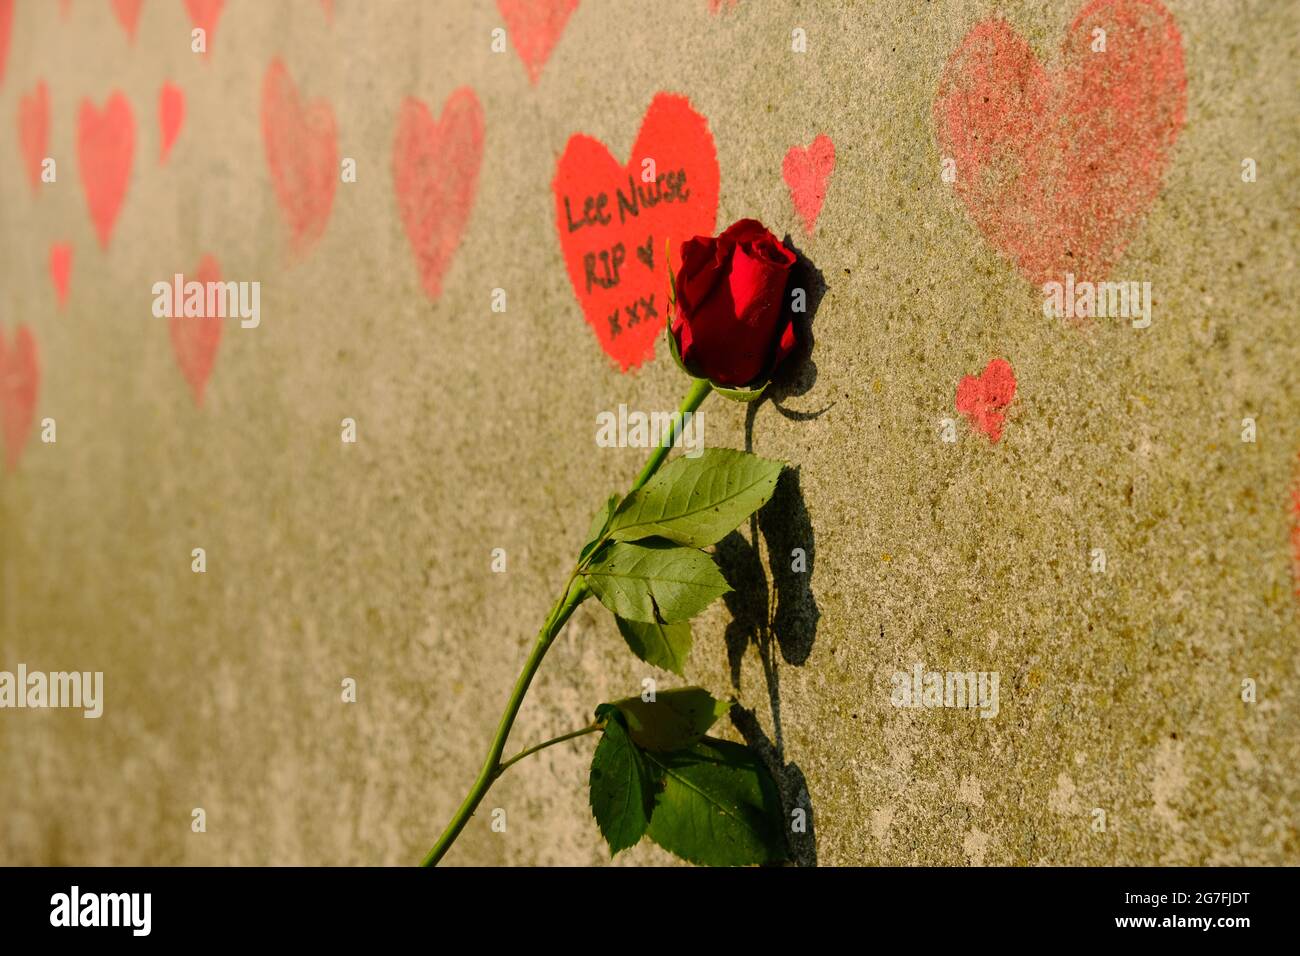 Eine einzelne rote Rose, die von der National Covid Memorial Wall in London für eine Person hinterlassen wurde, die an Covid-19 starb. Stockfoto